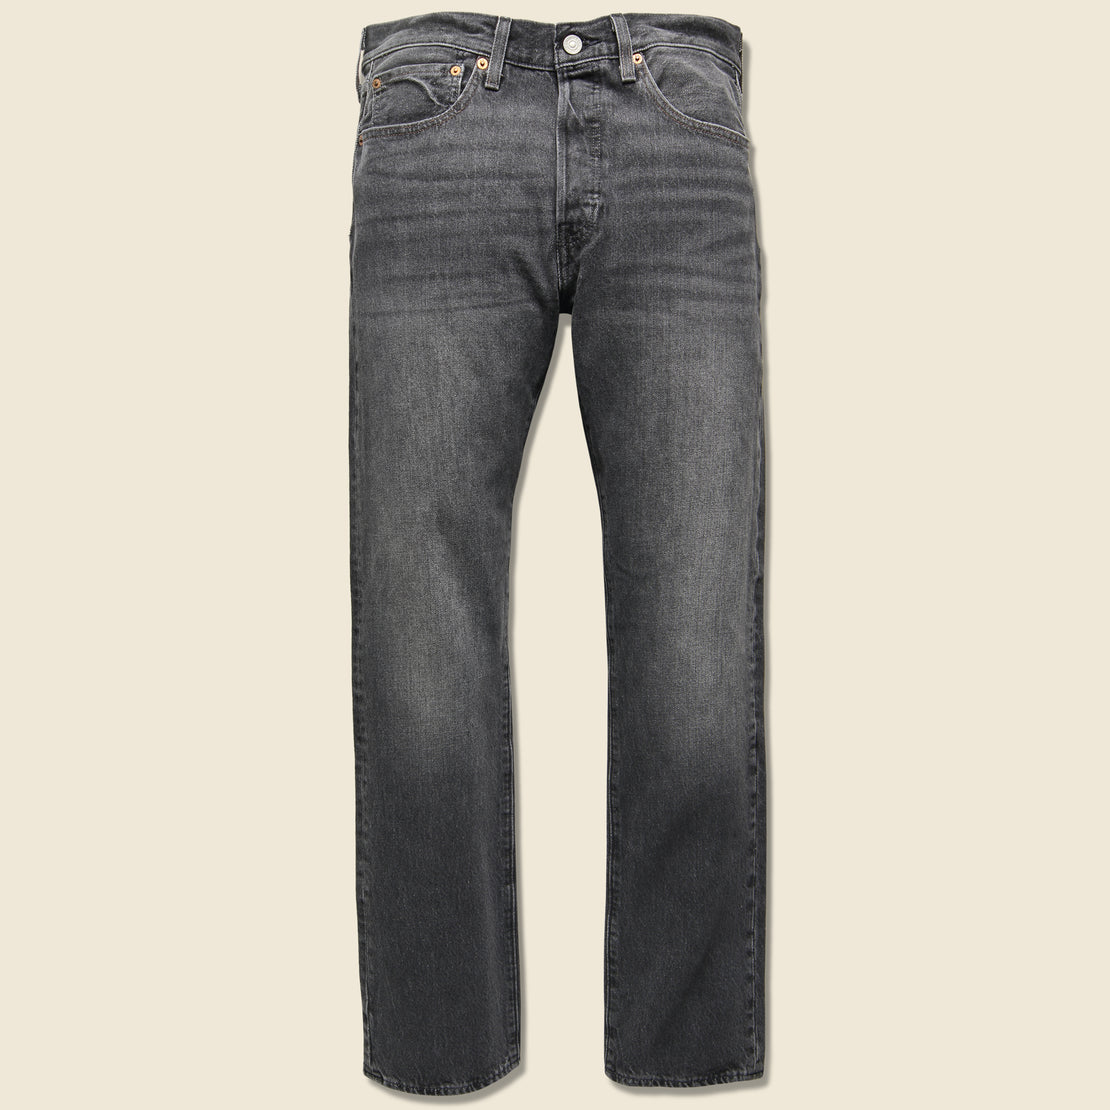 Levis Premium 501 Original Fit Jean - Distressed Black